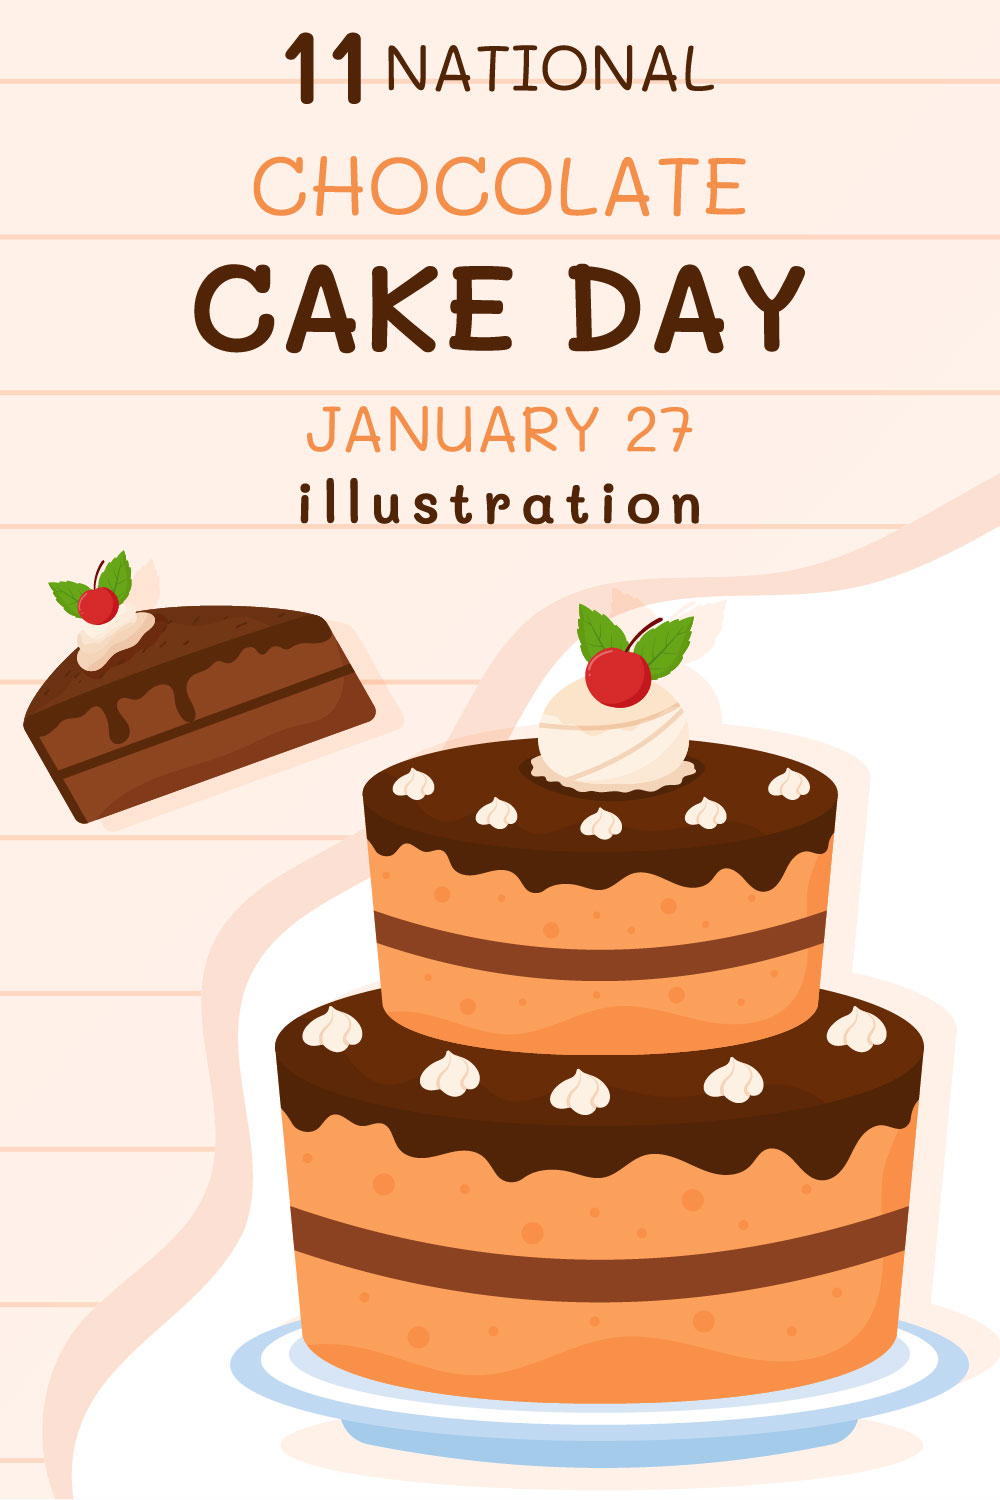 National Chocolate Cake Day Illustration pinterest image.